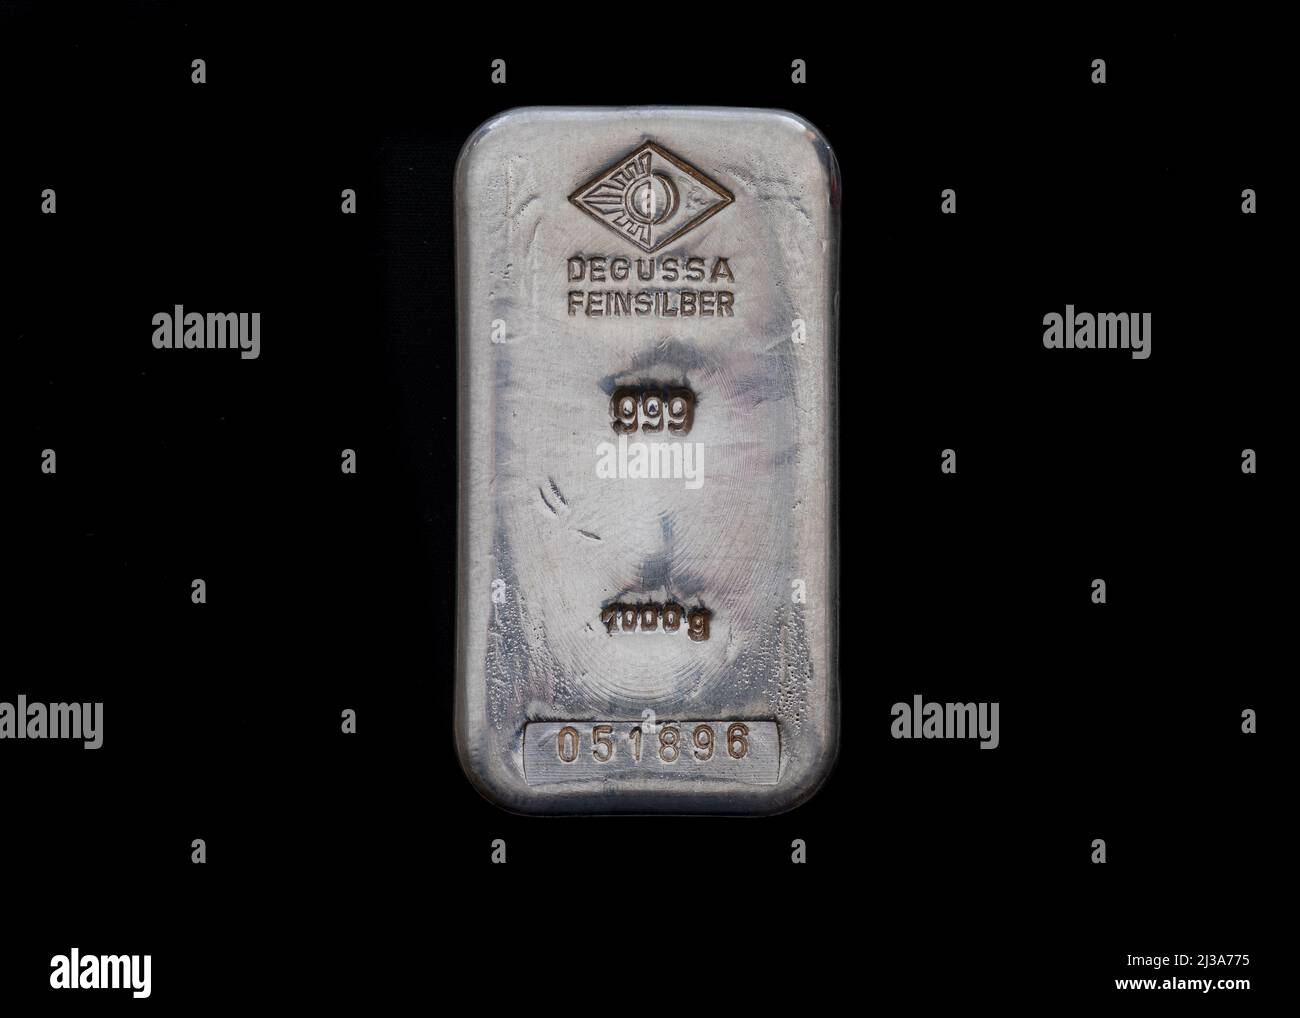 Marienheide, Germania - 13 gennaio 2022: Vecchia barra d'argento da 1 kg della società Degussa. Foto Stock